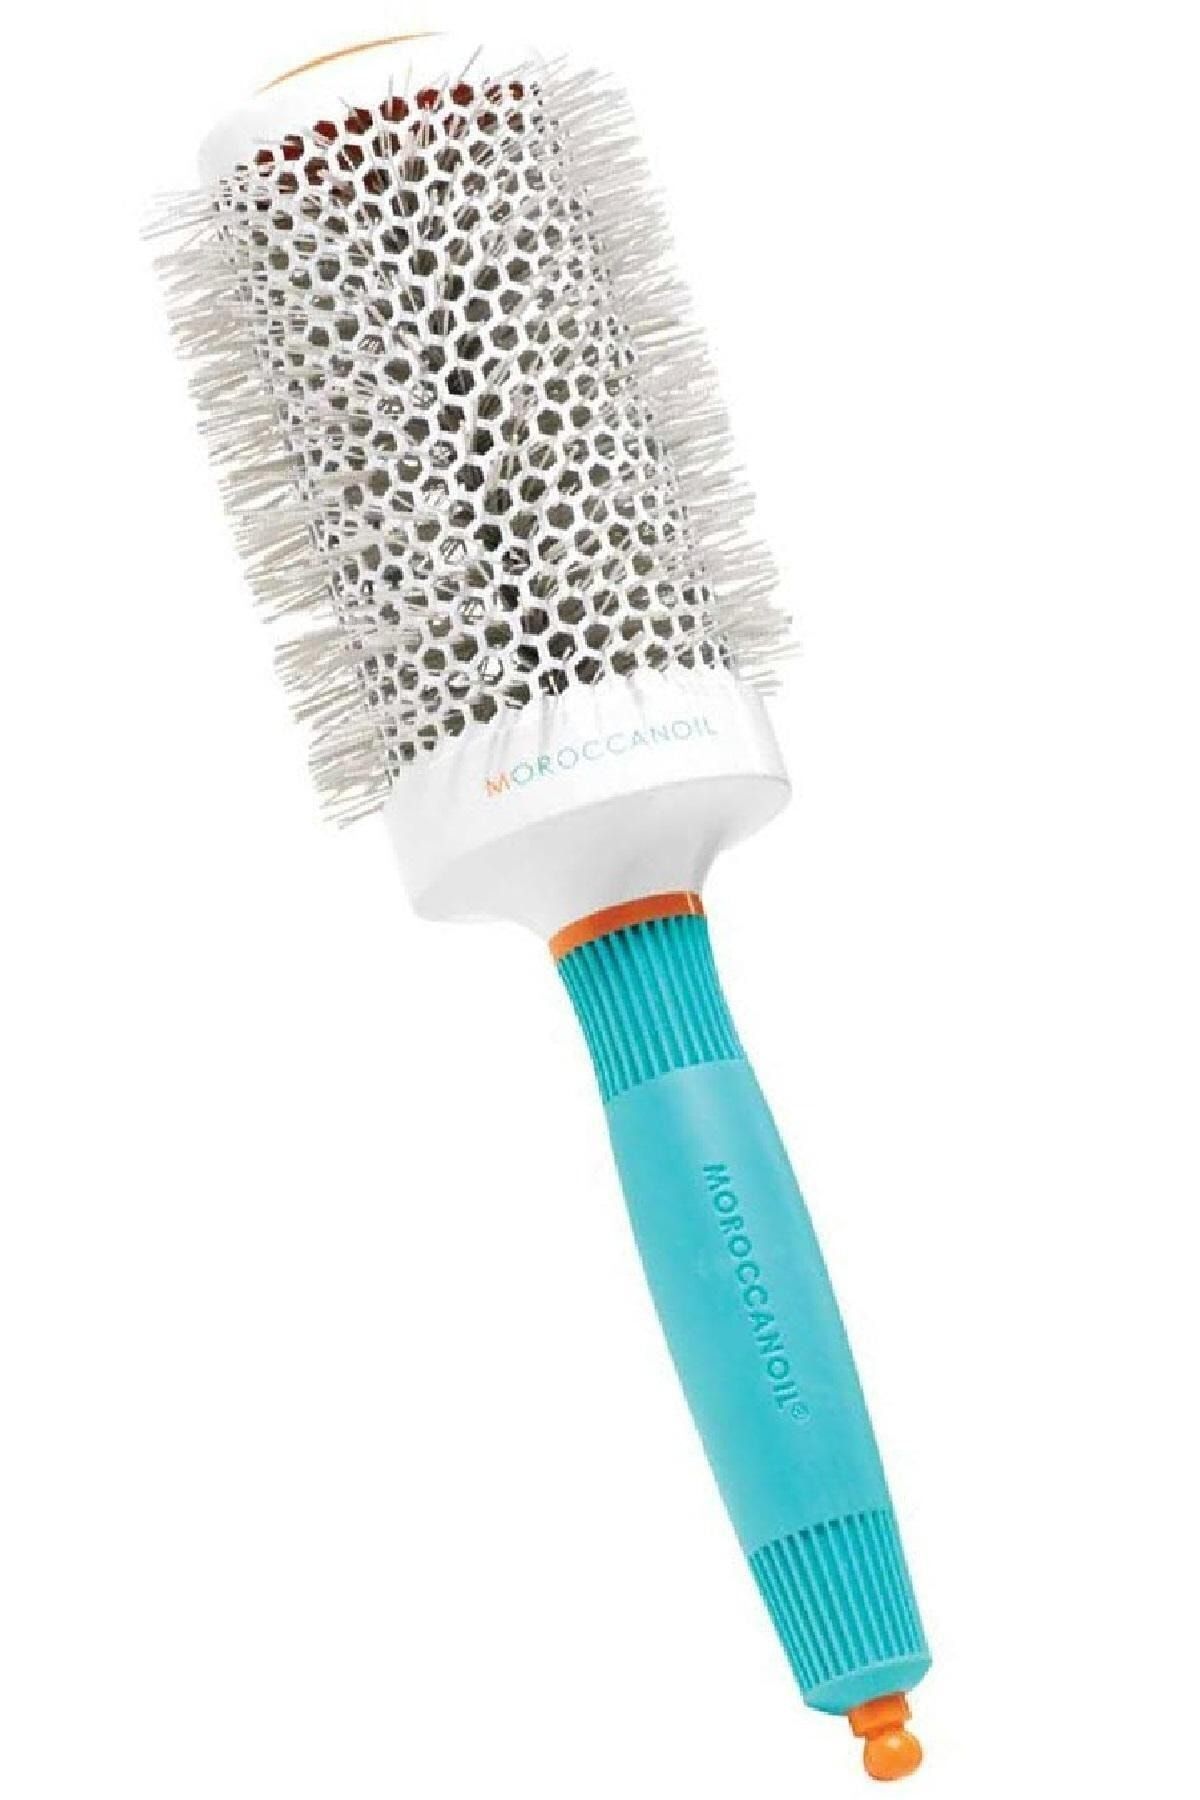 Moroccanoil Saça pürüzsüz bir görünüm vermek için tasarlanmış Round Brush Seramik Yuvarlak saç fırçası 55mm